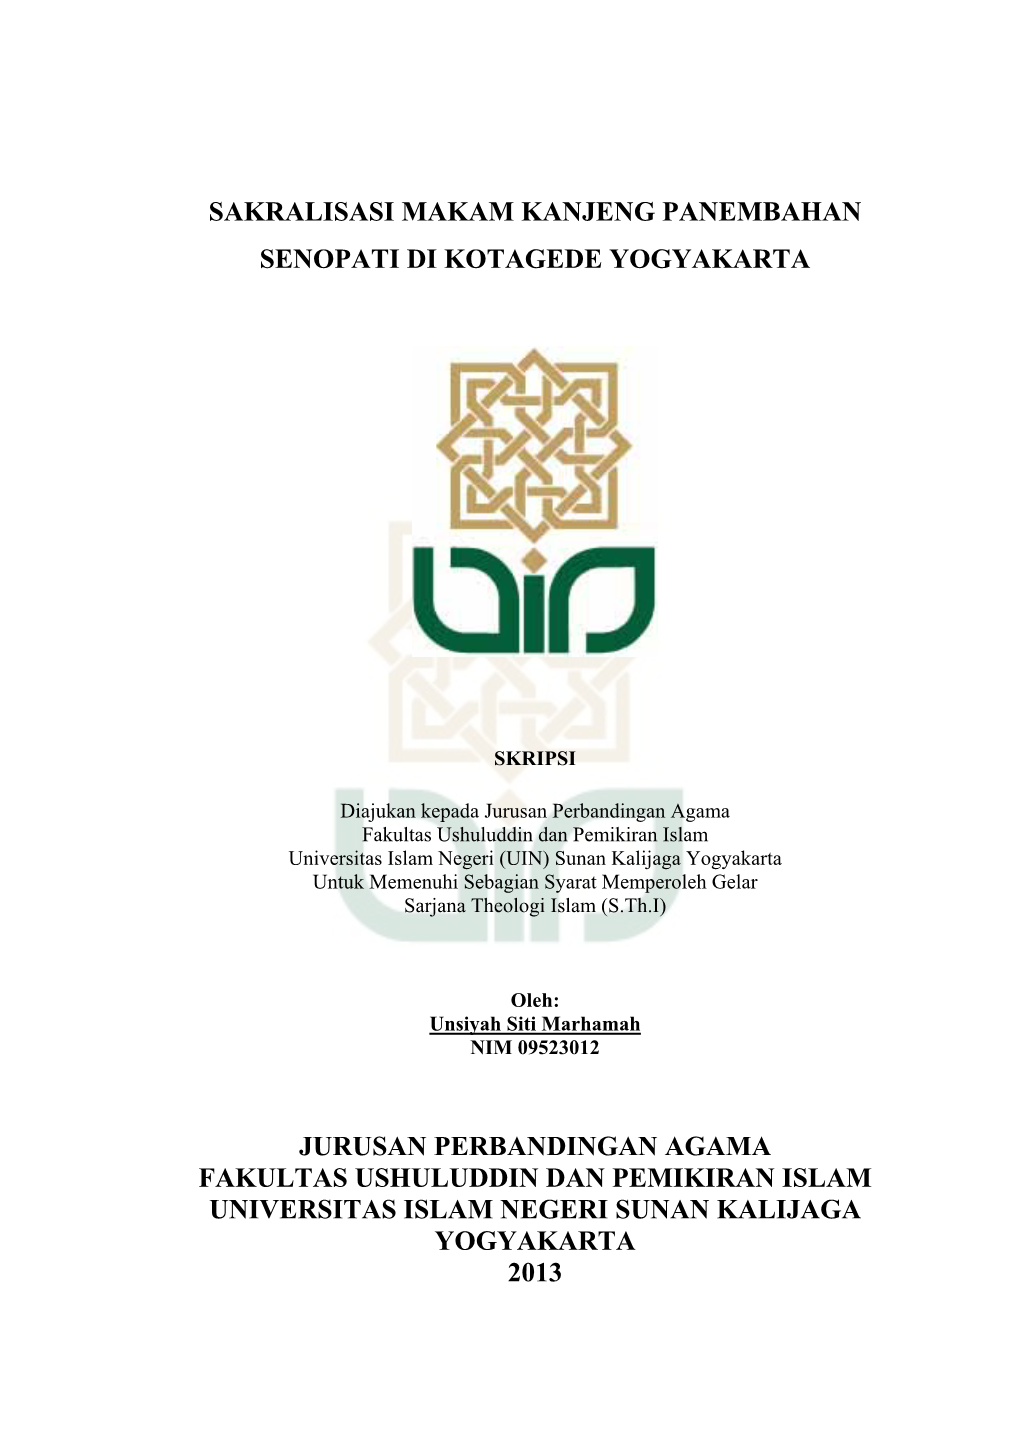 Sakralisasi Makam Kanjeng Panembahan Senopati Di Kotagede Yogyakarta